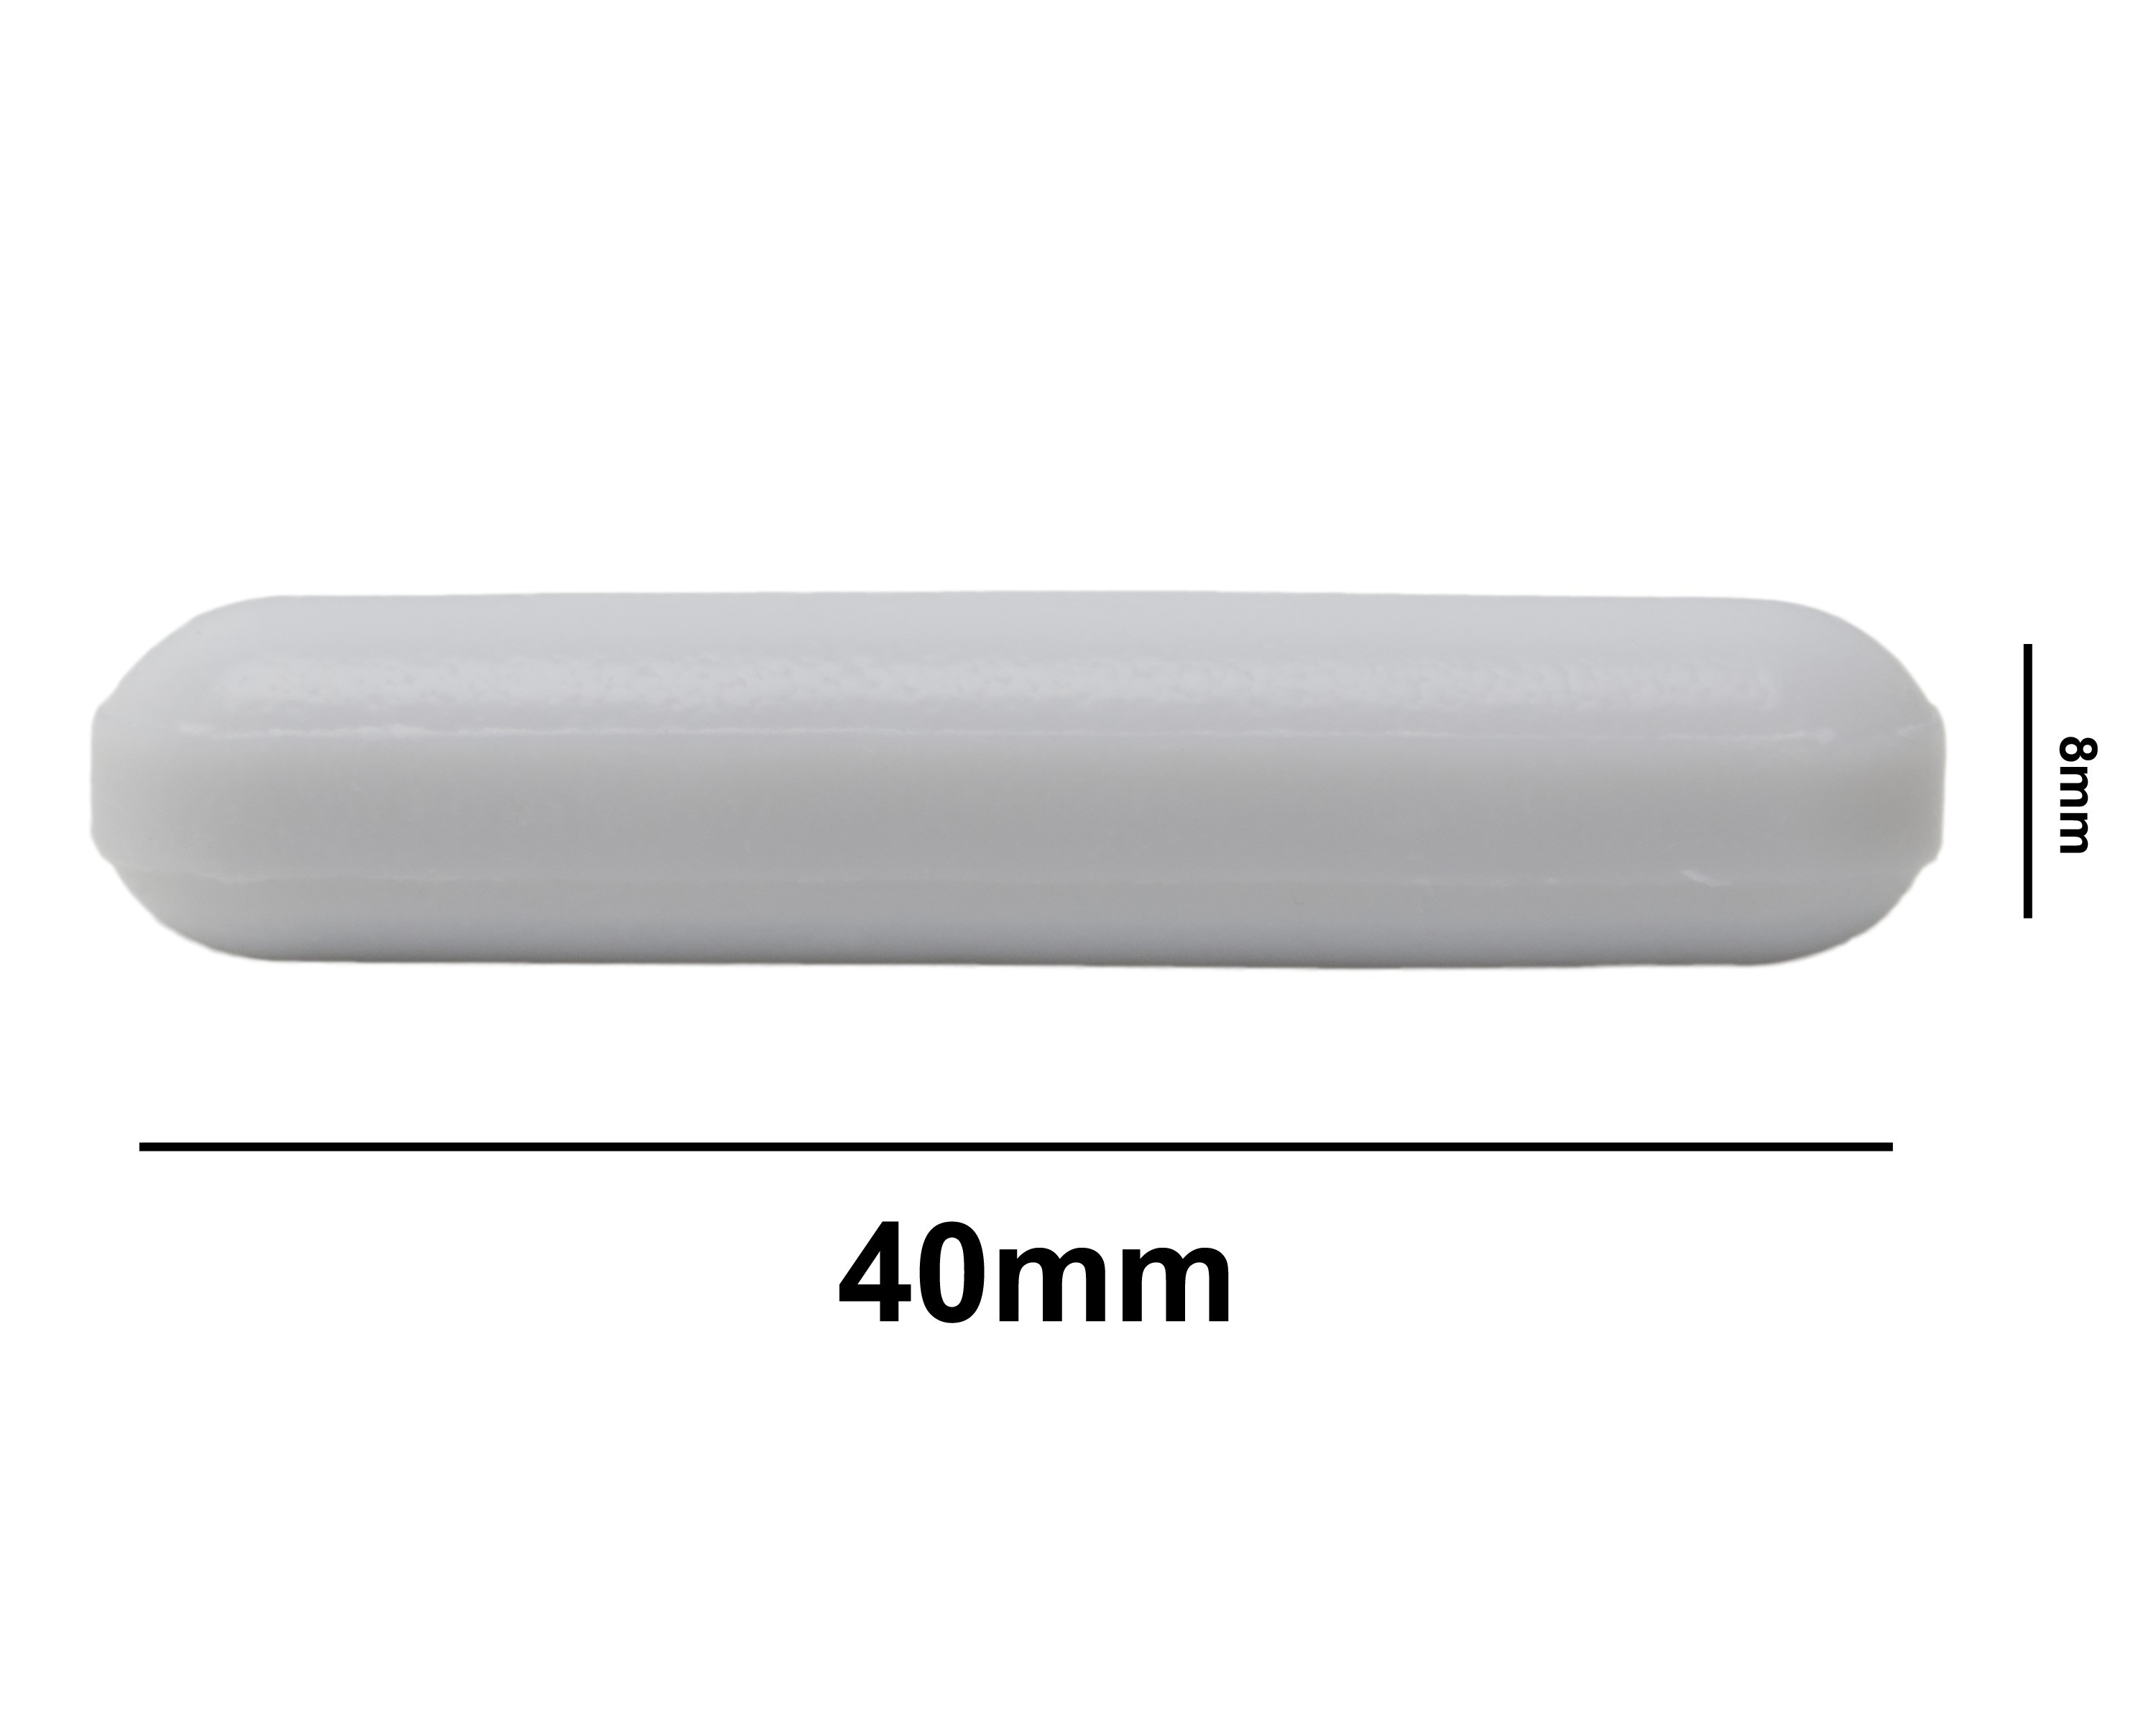 SP Bel-Art Spinbar Teflon Polygon Magnetic Stirring Bar; 40 x 8mm, White, without Pivot Ring